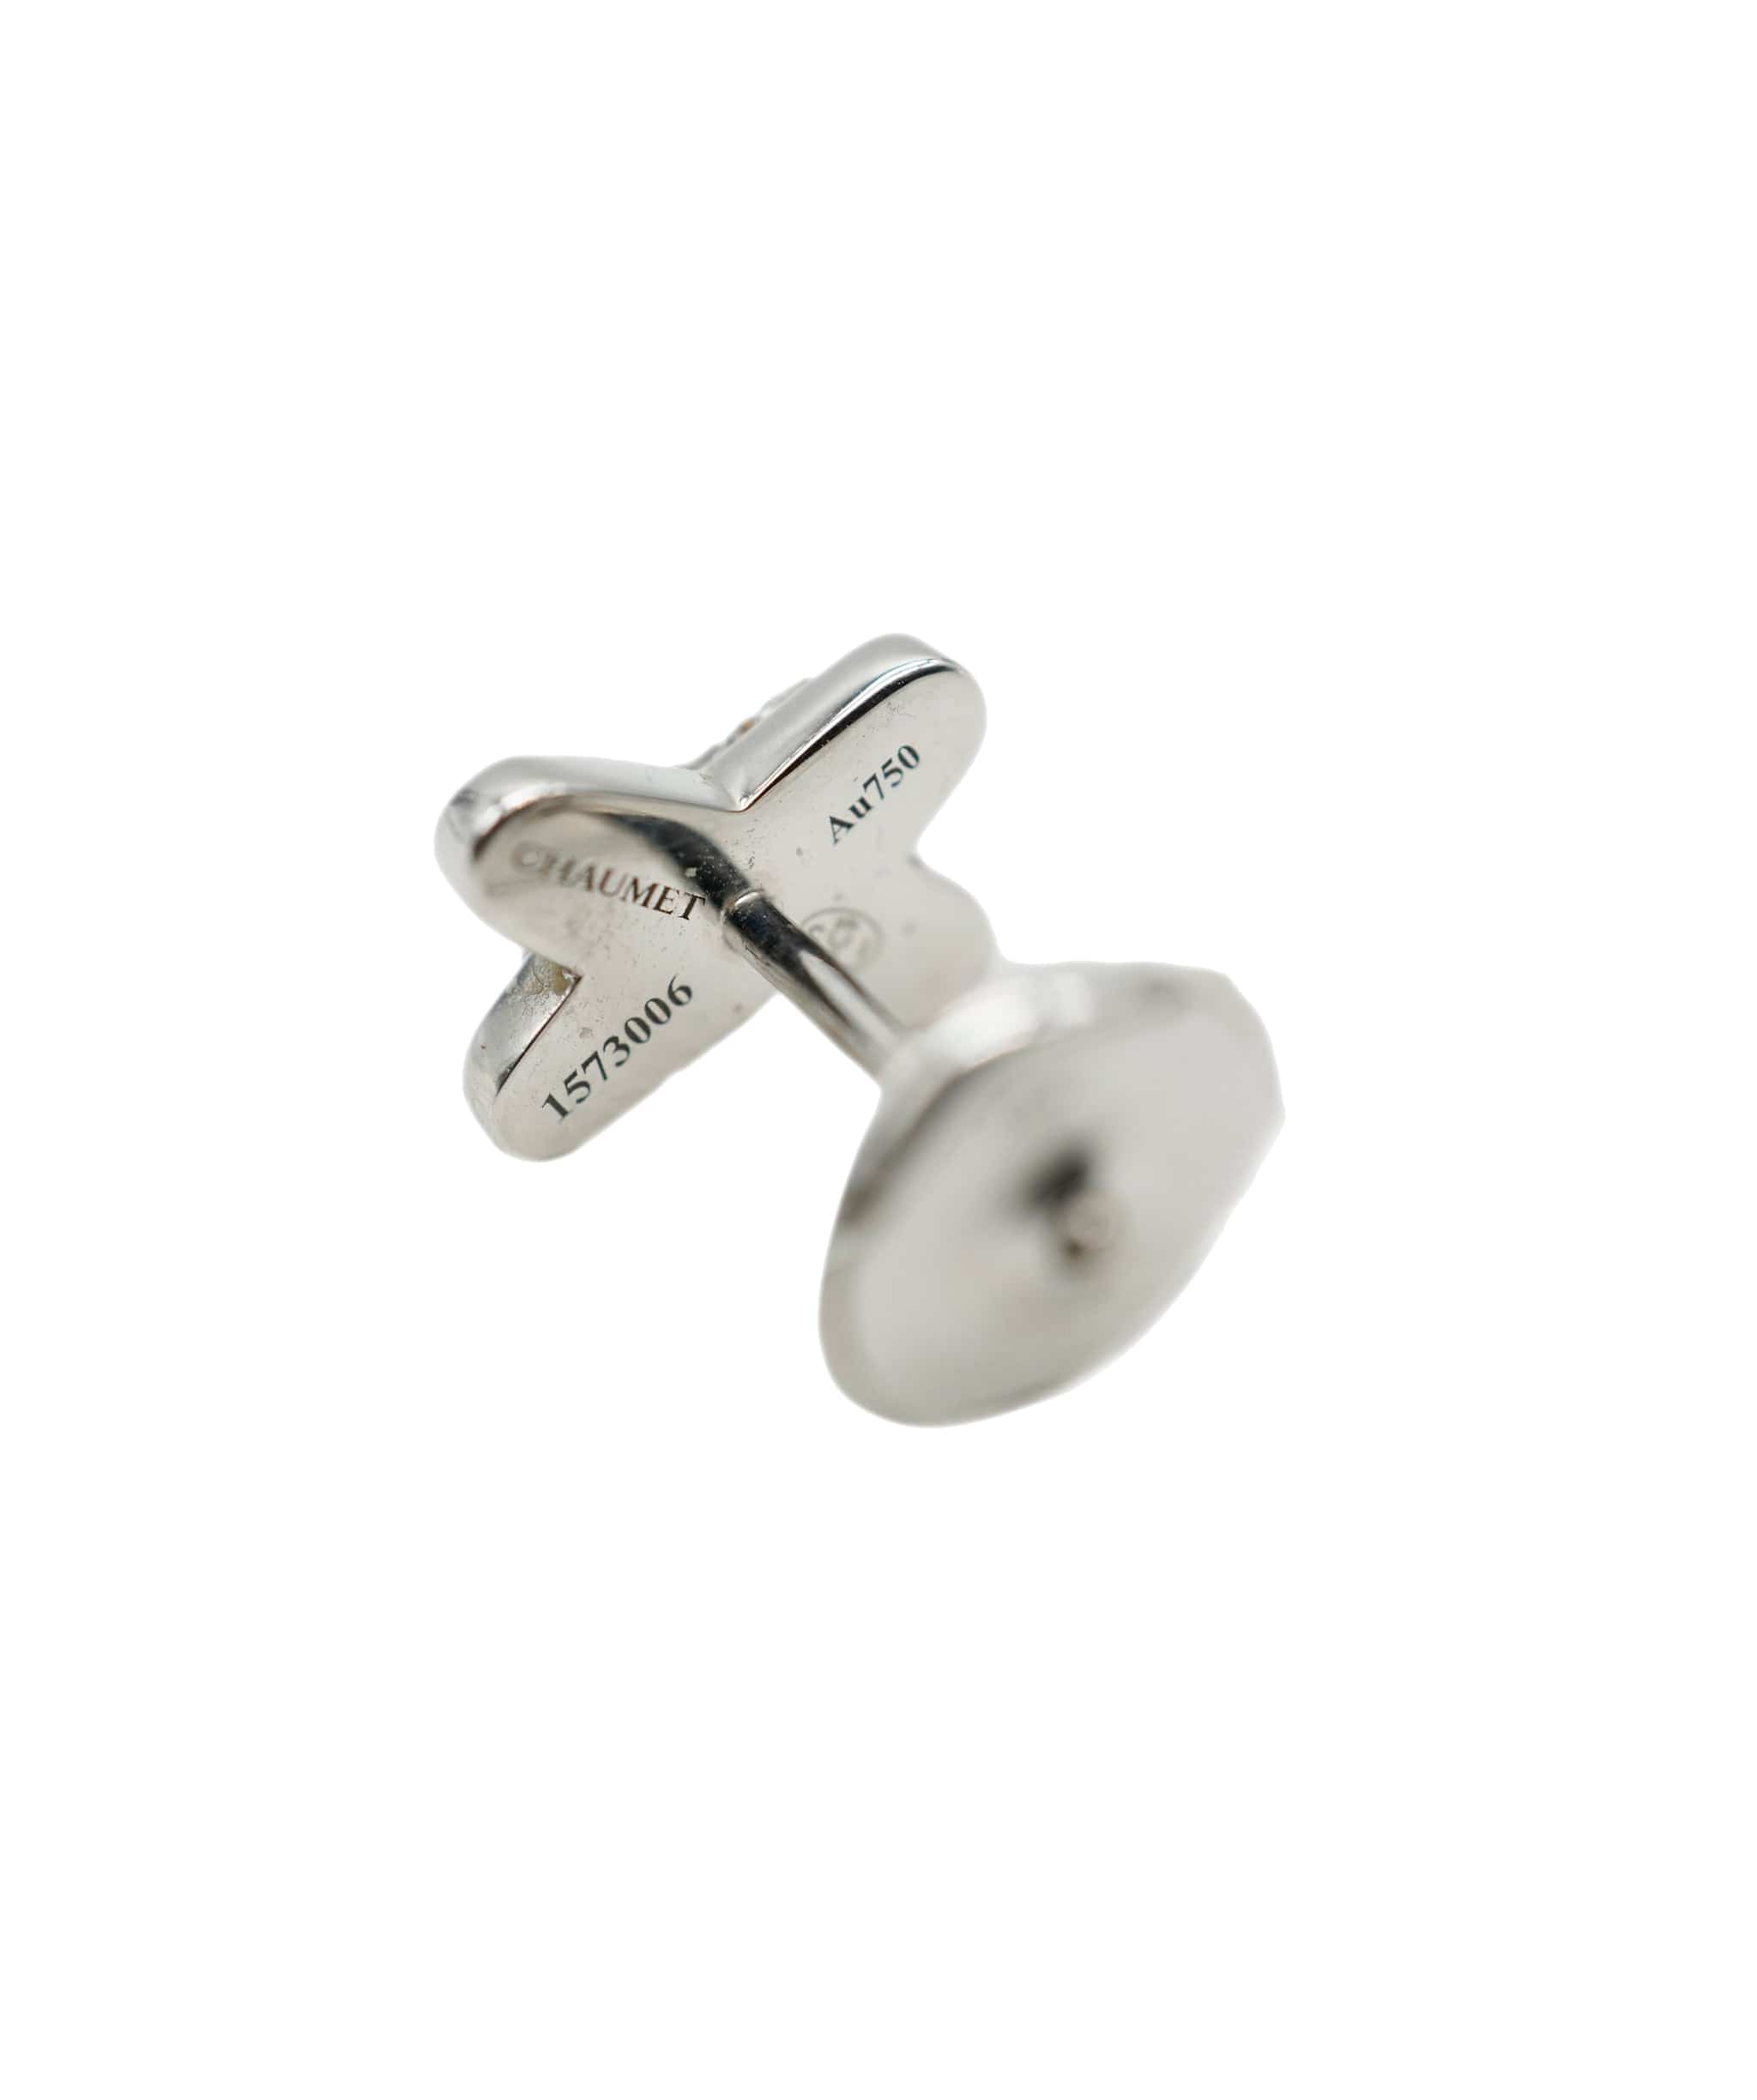 Chaumet Jeux de Liens Chaumet Single Earring Jeux de Liens Diamond 18K White Gold, 0.16 Ctw AHC1545